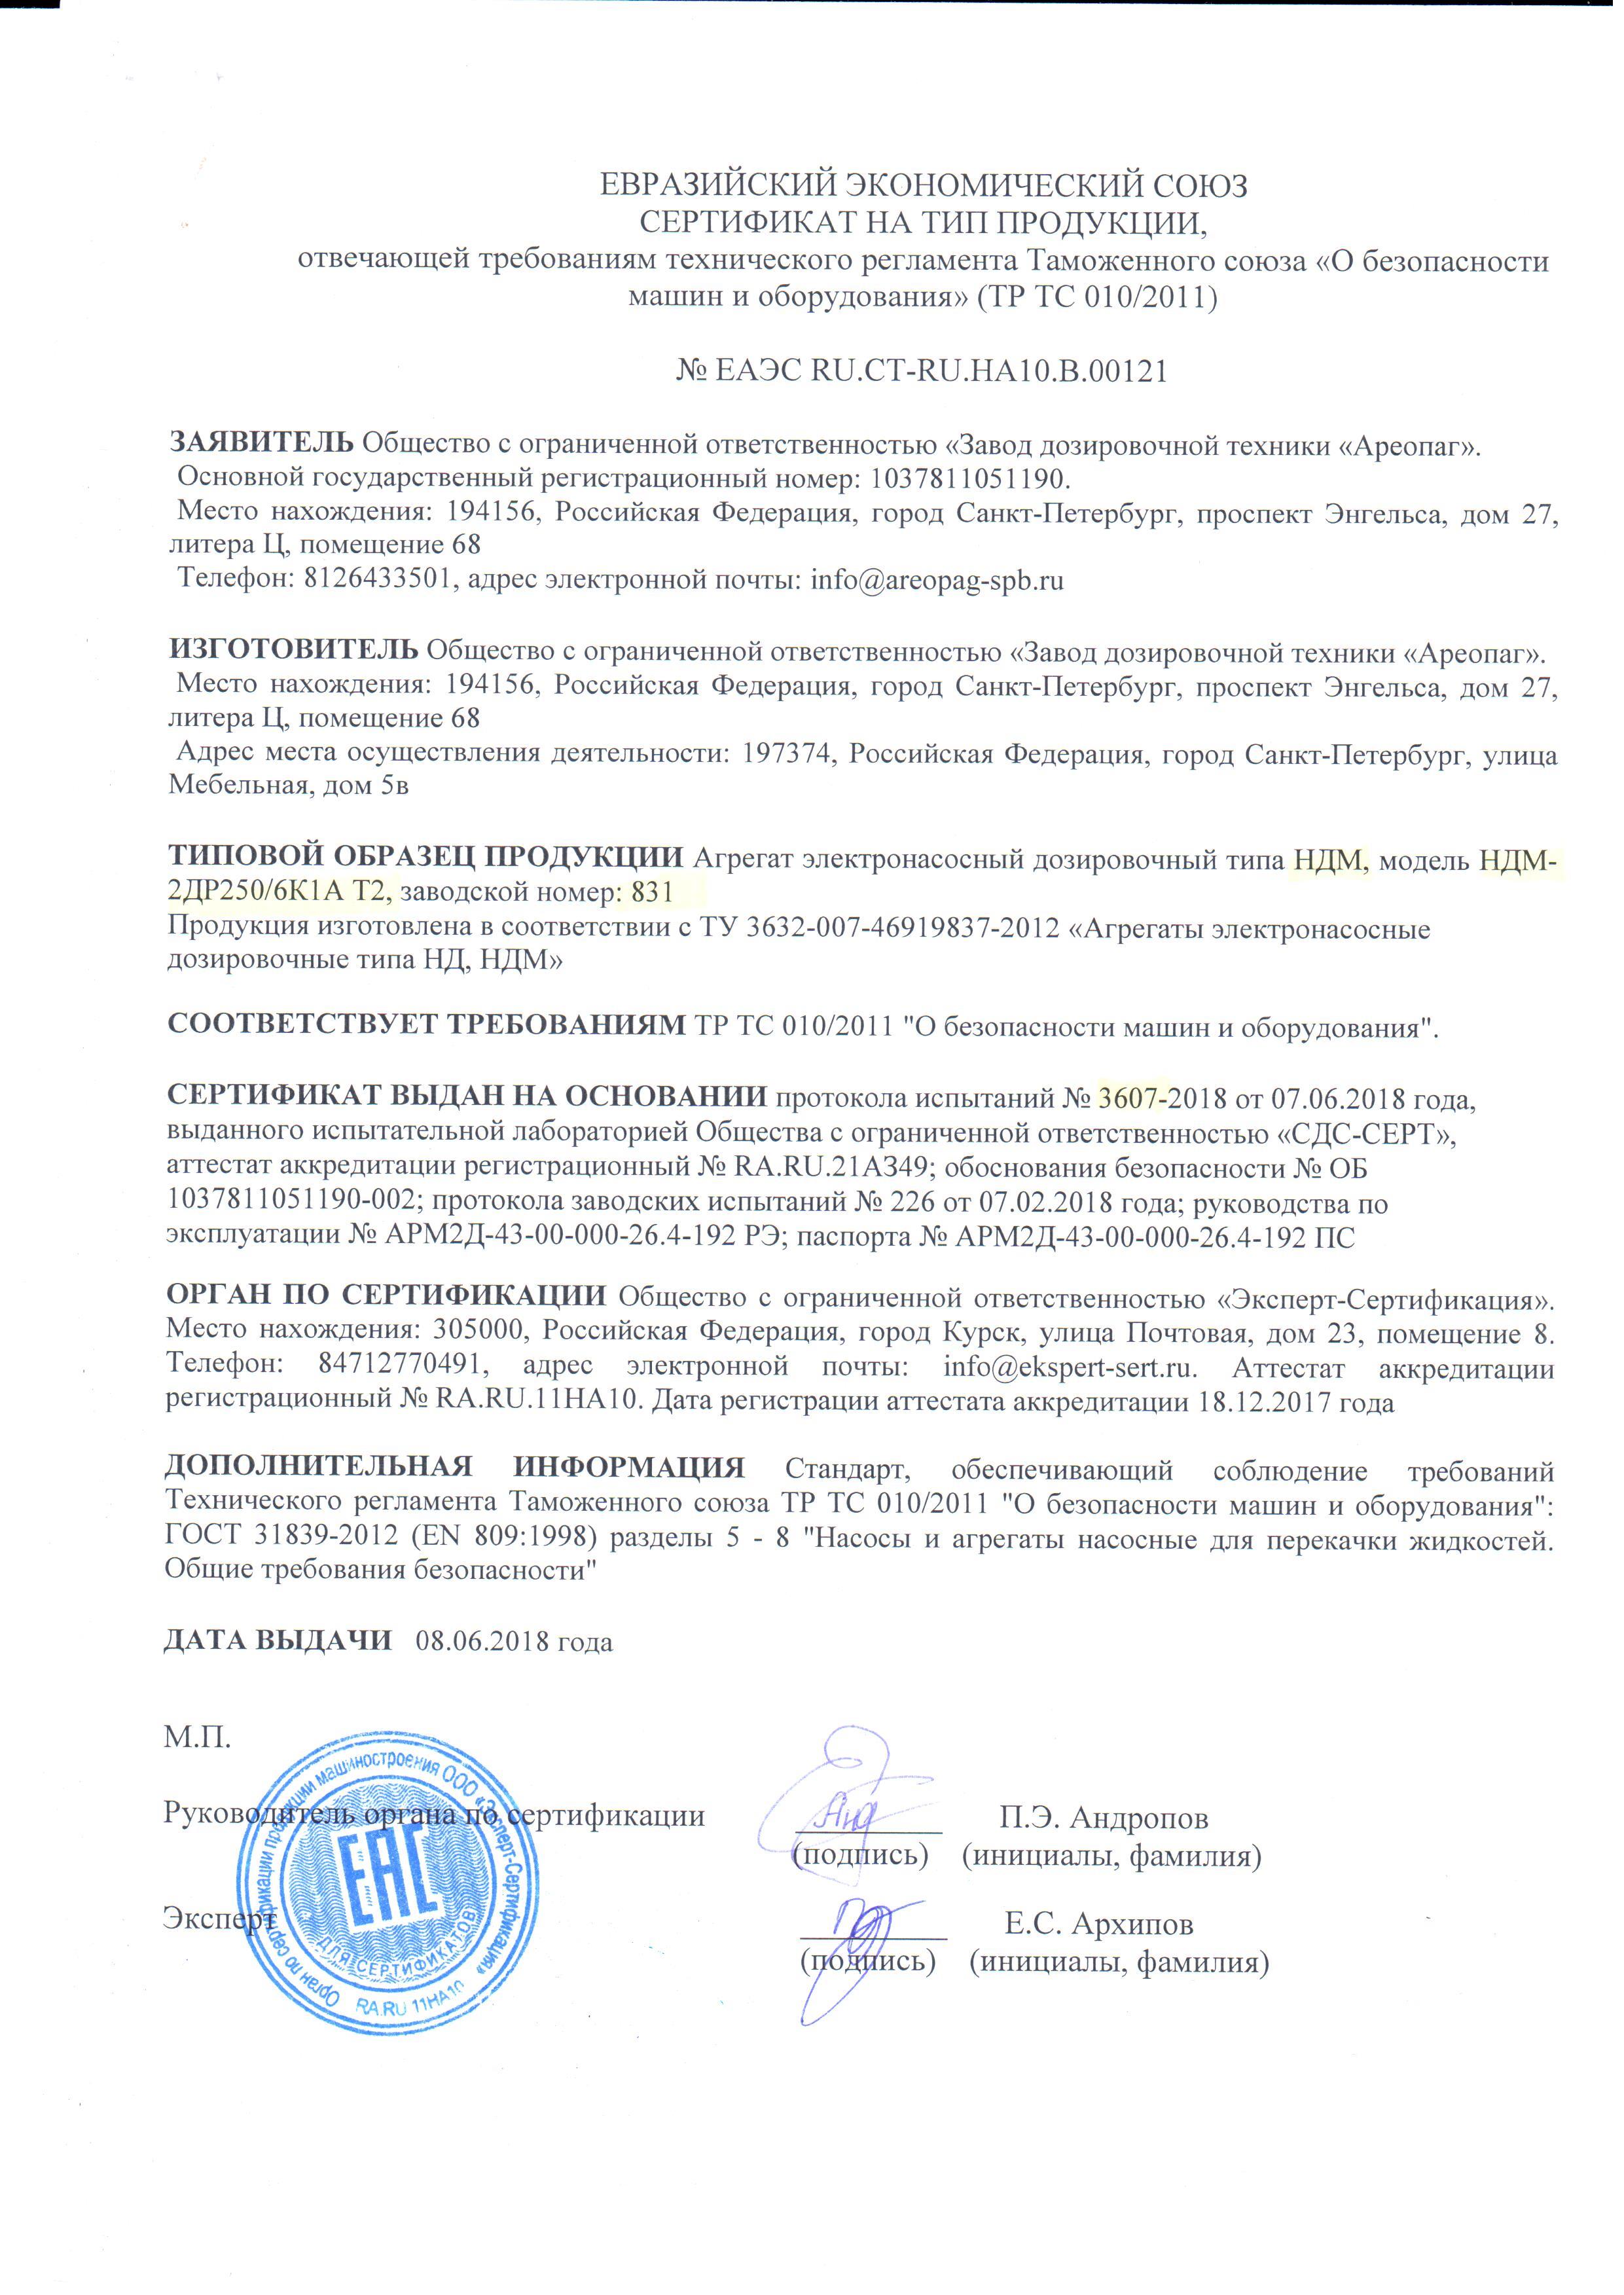 Сертификат на тип продукции № ЕАЭС RU.CT-RU. НА10.В.00121. Агрегат электронасосный дозировочный типа НДМ, зав.номер 831